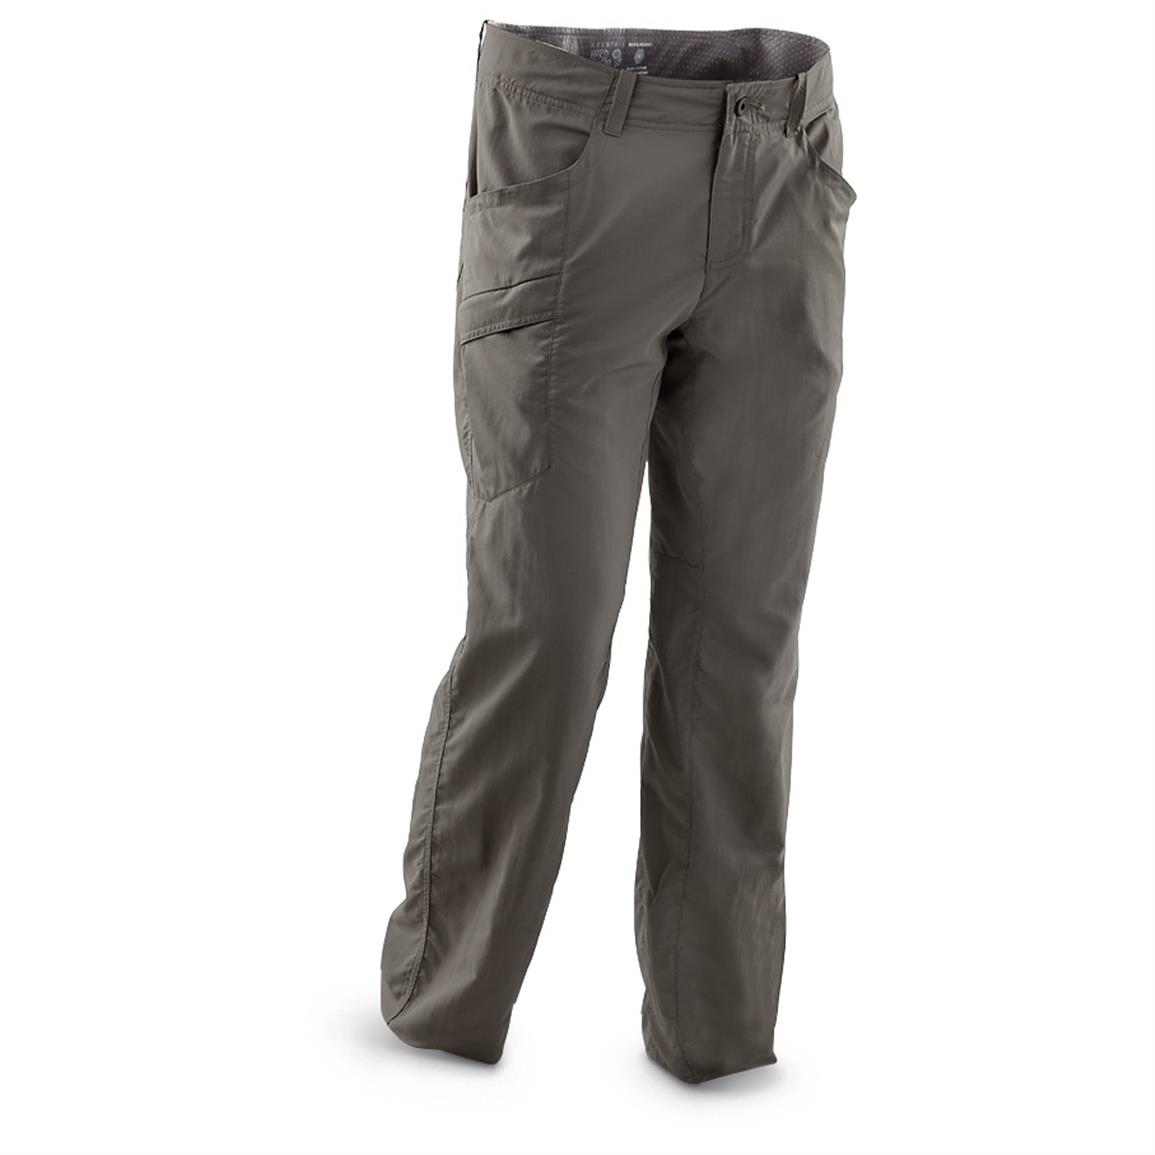 Mountain Hardwear Mesa V2 Pants - 593378, Jeans & Pants at Sportsman's ...